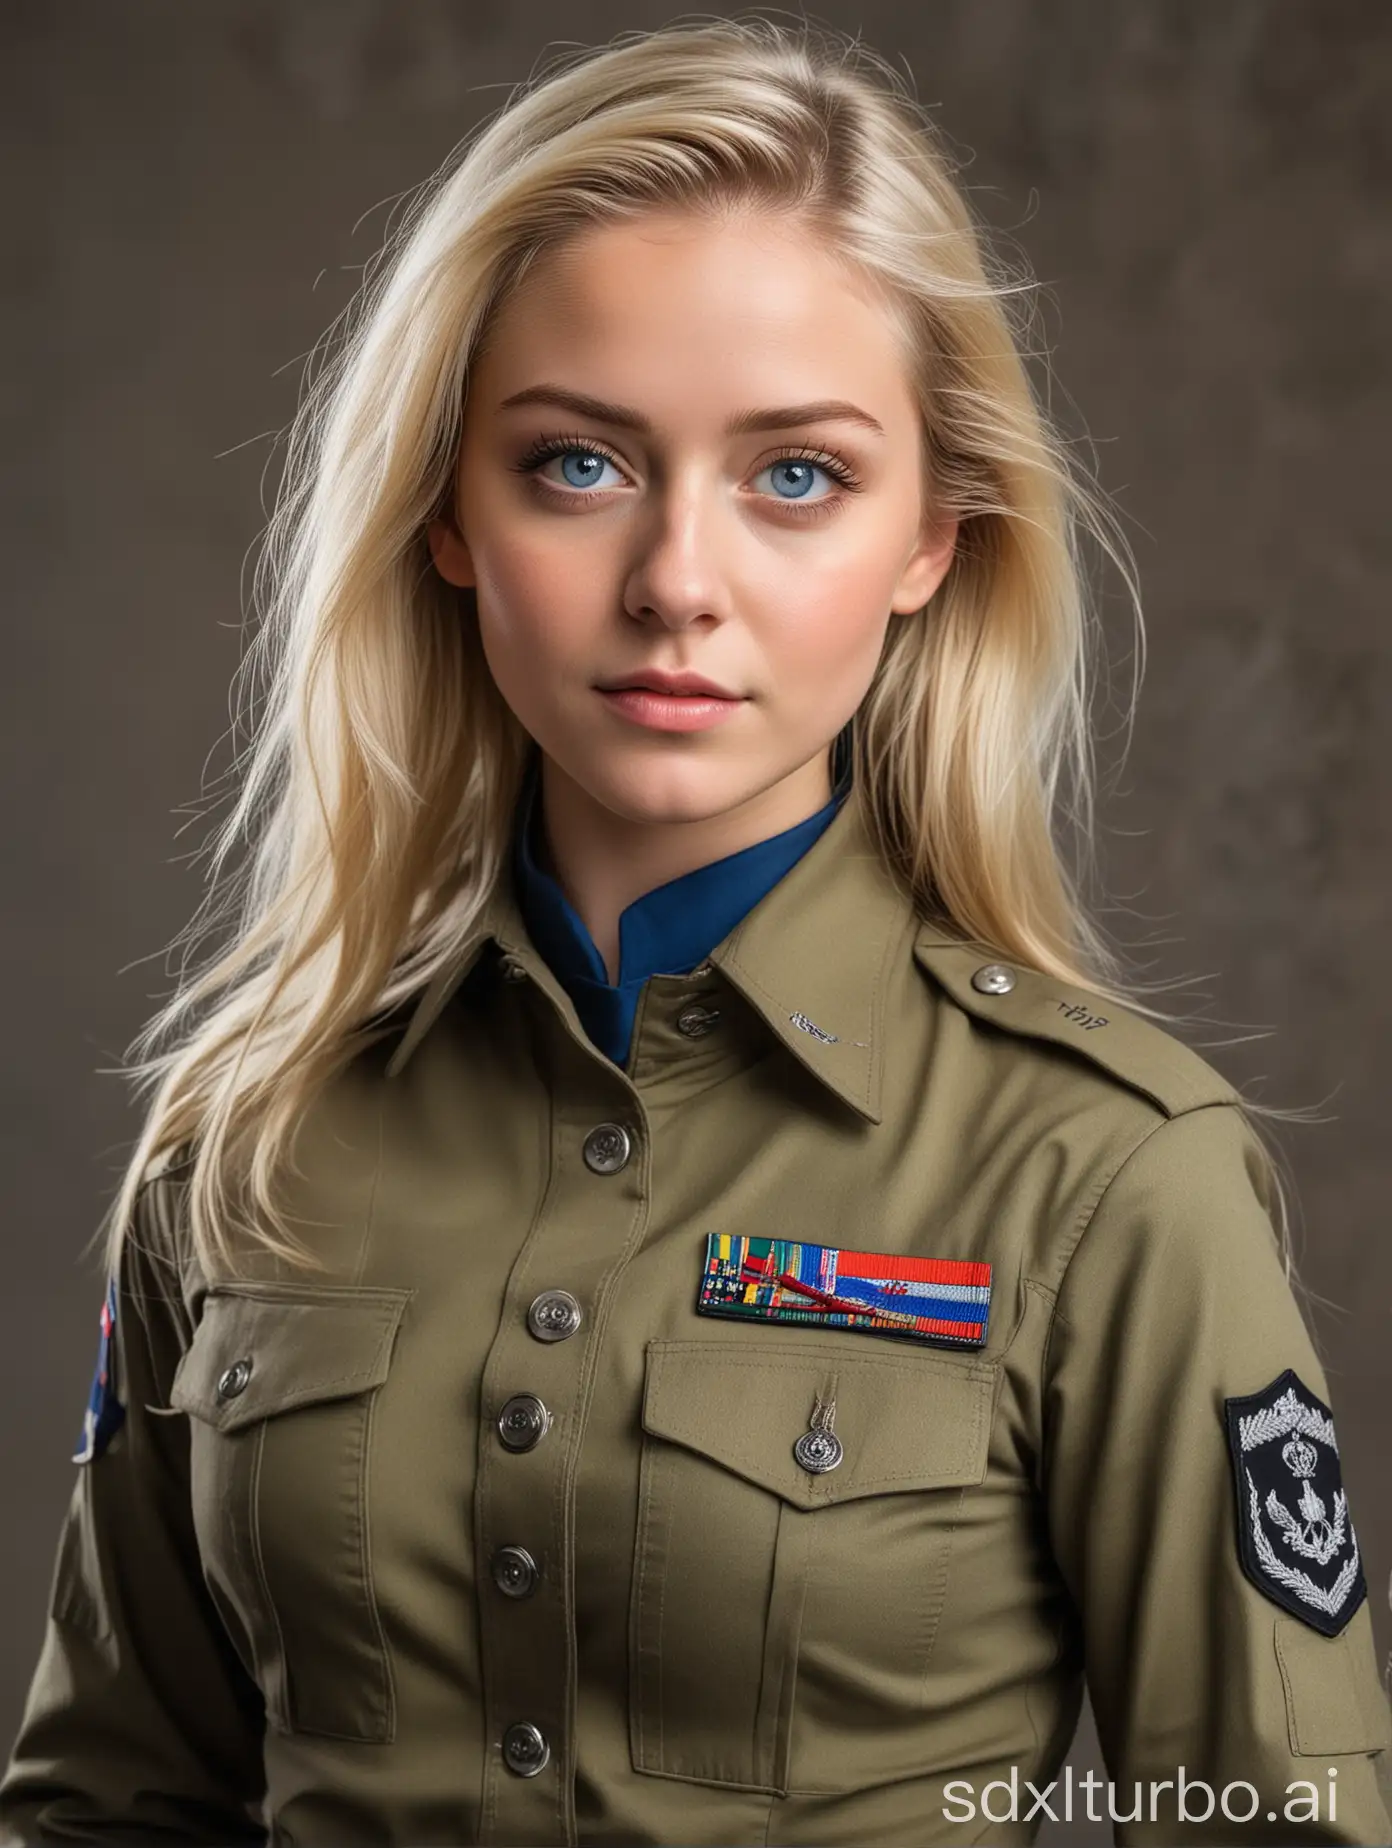 Chica rubia de ojos azules con uniforme militar pegado al cuerpo, falda y escote